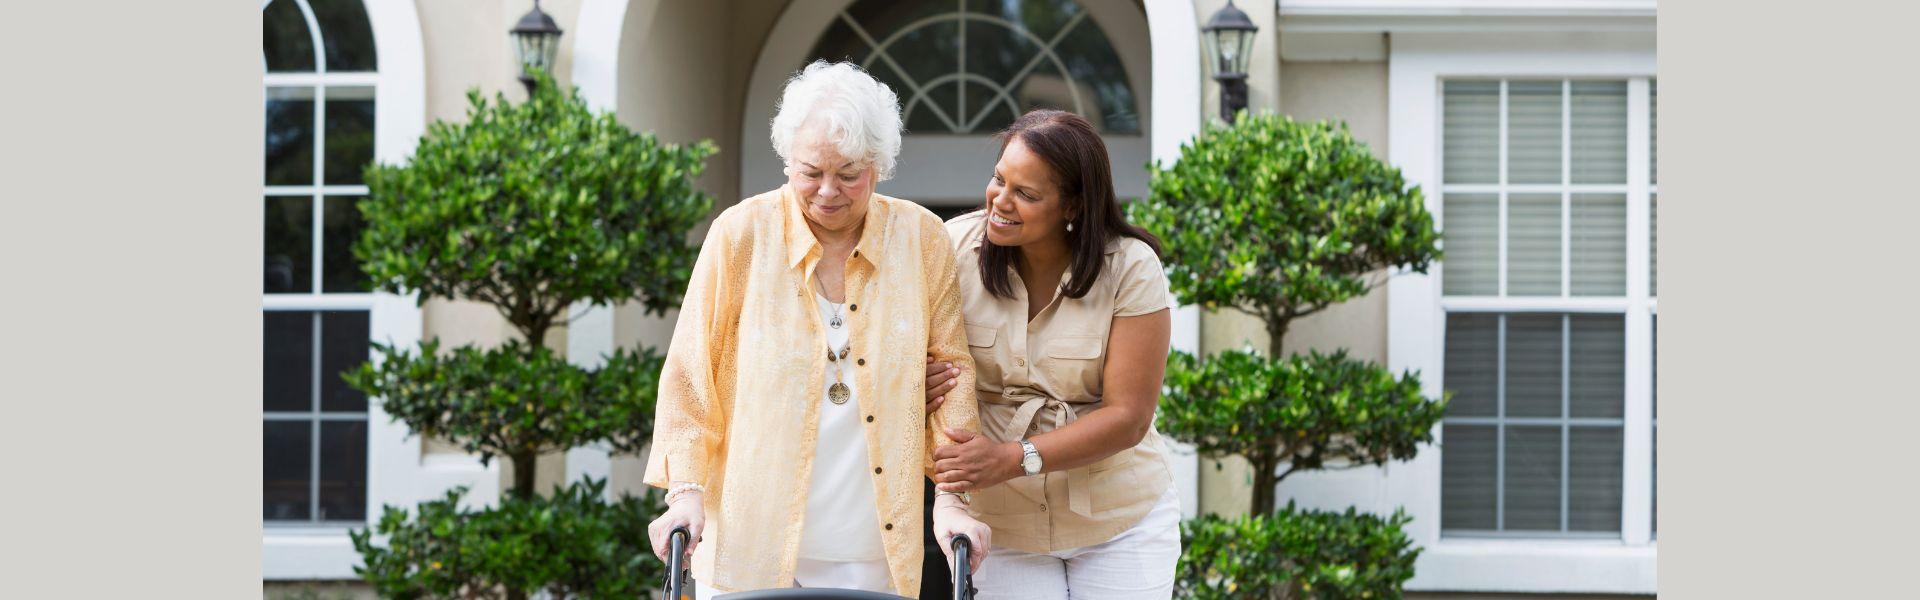 caregiver helps older woman